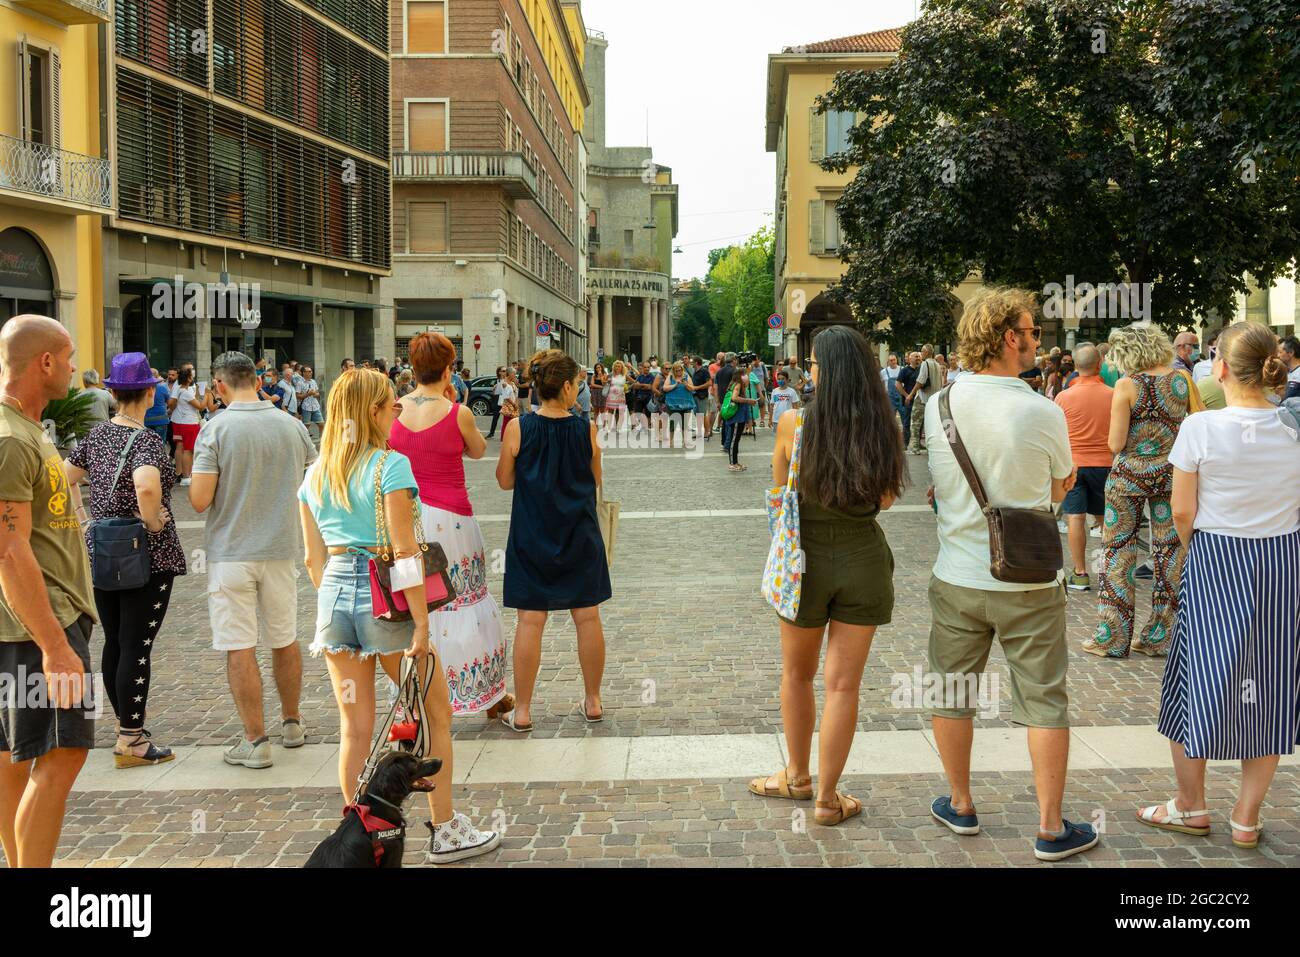 CREMON, ITALIE - 24 juillet 2021 : une foule de personnes protestant contre la vaccination Covid-19 à Cremona, Italie Banque D'Images